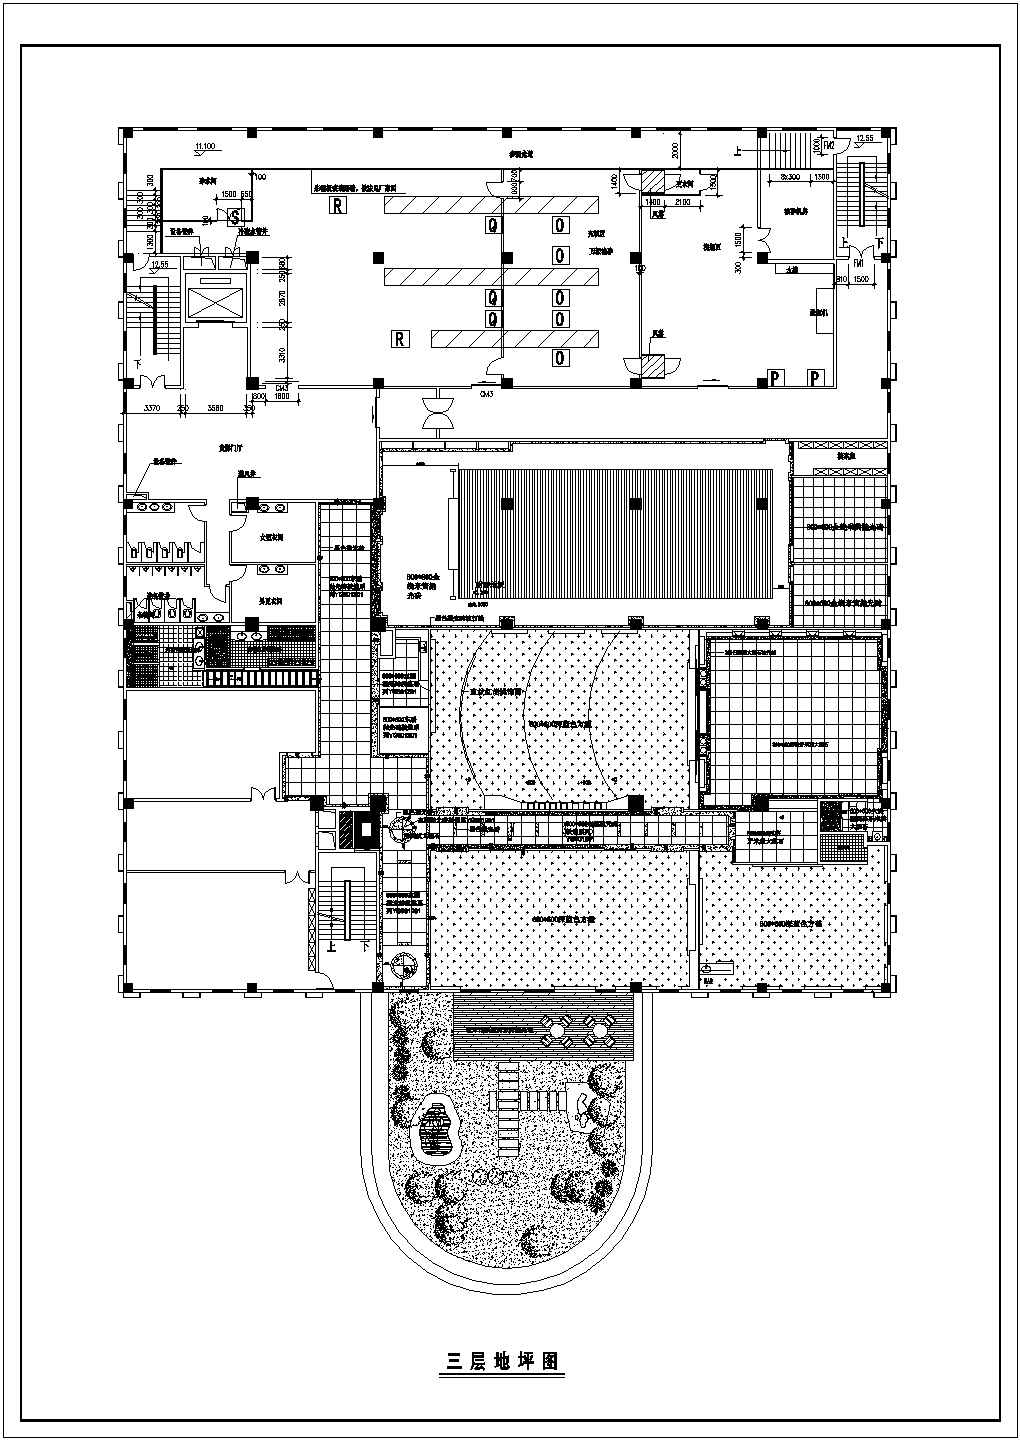 苏州某地化工园工厂办公室全套装修设计方案图